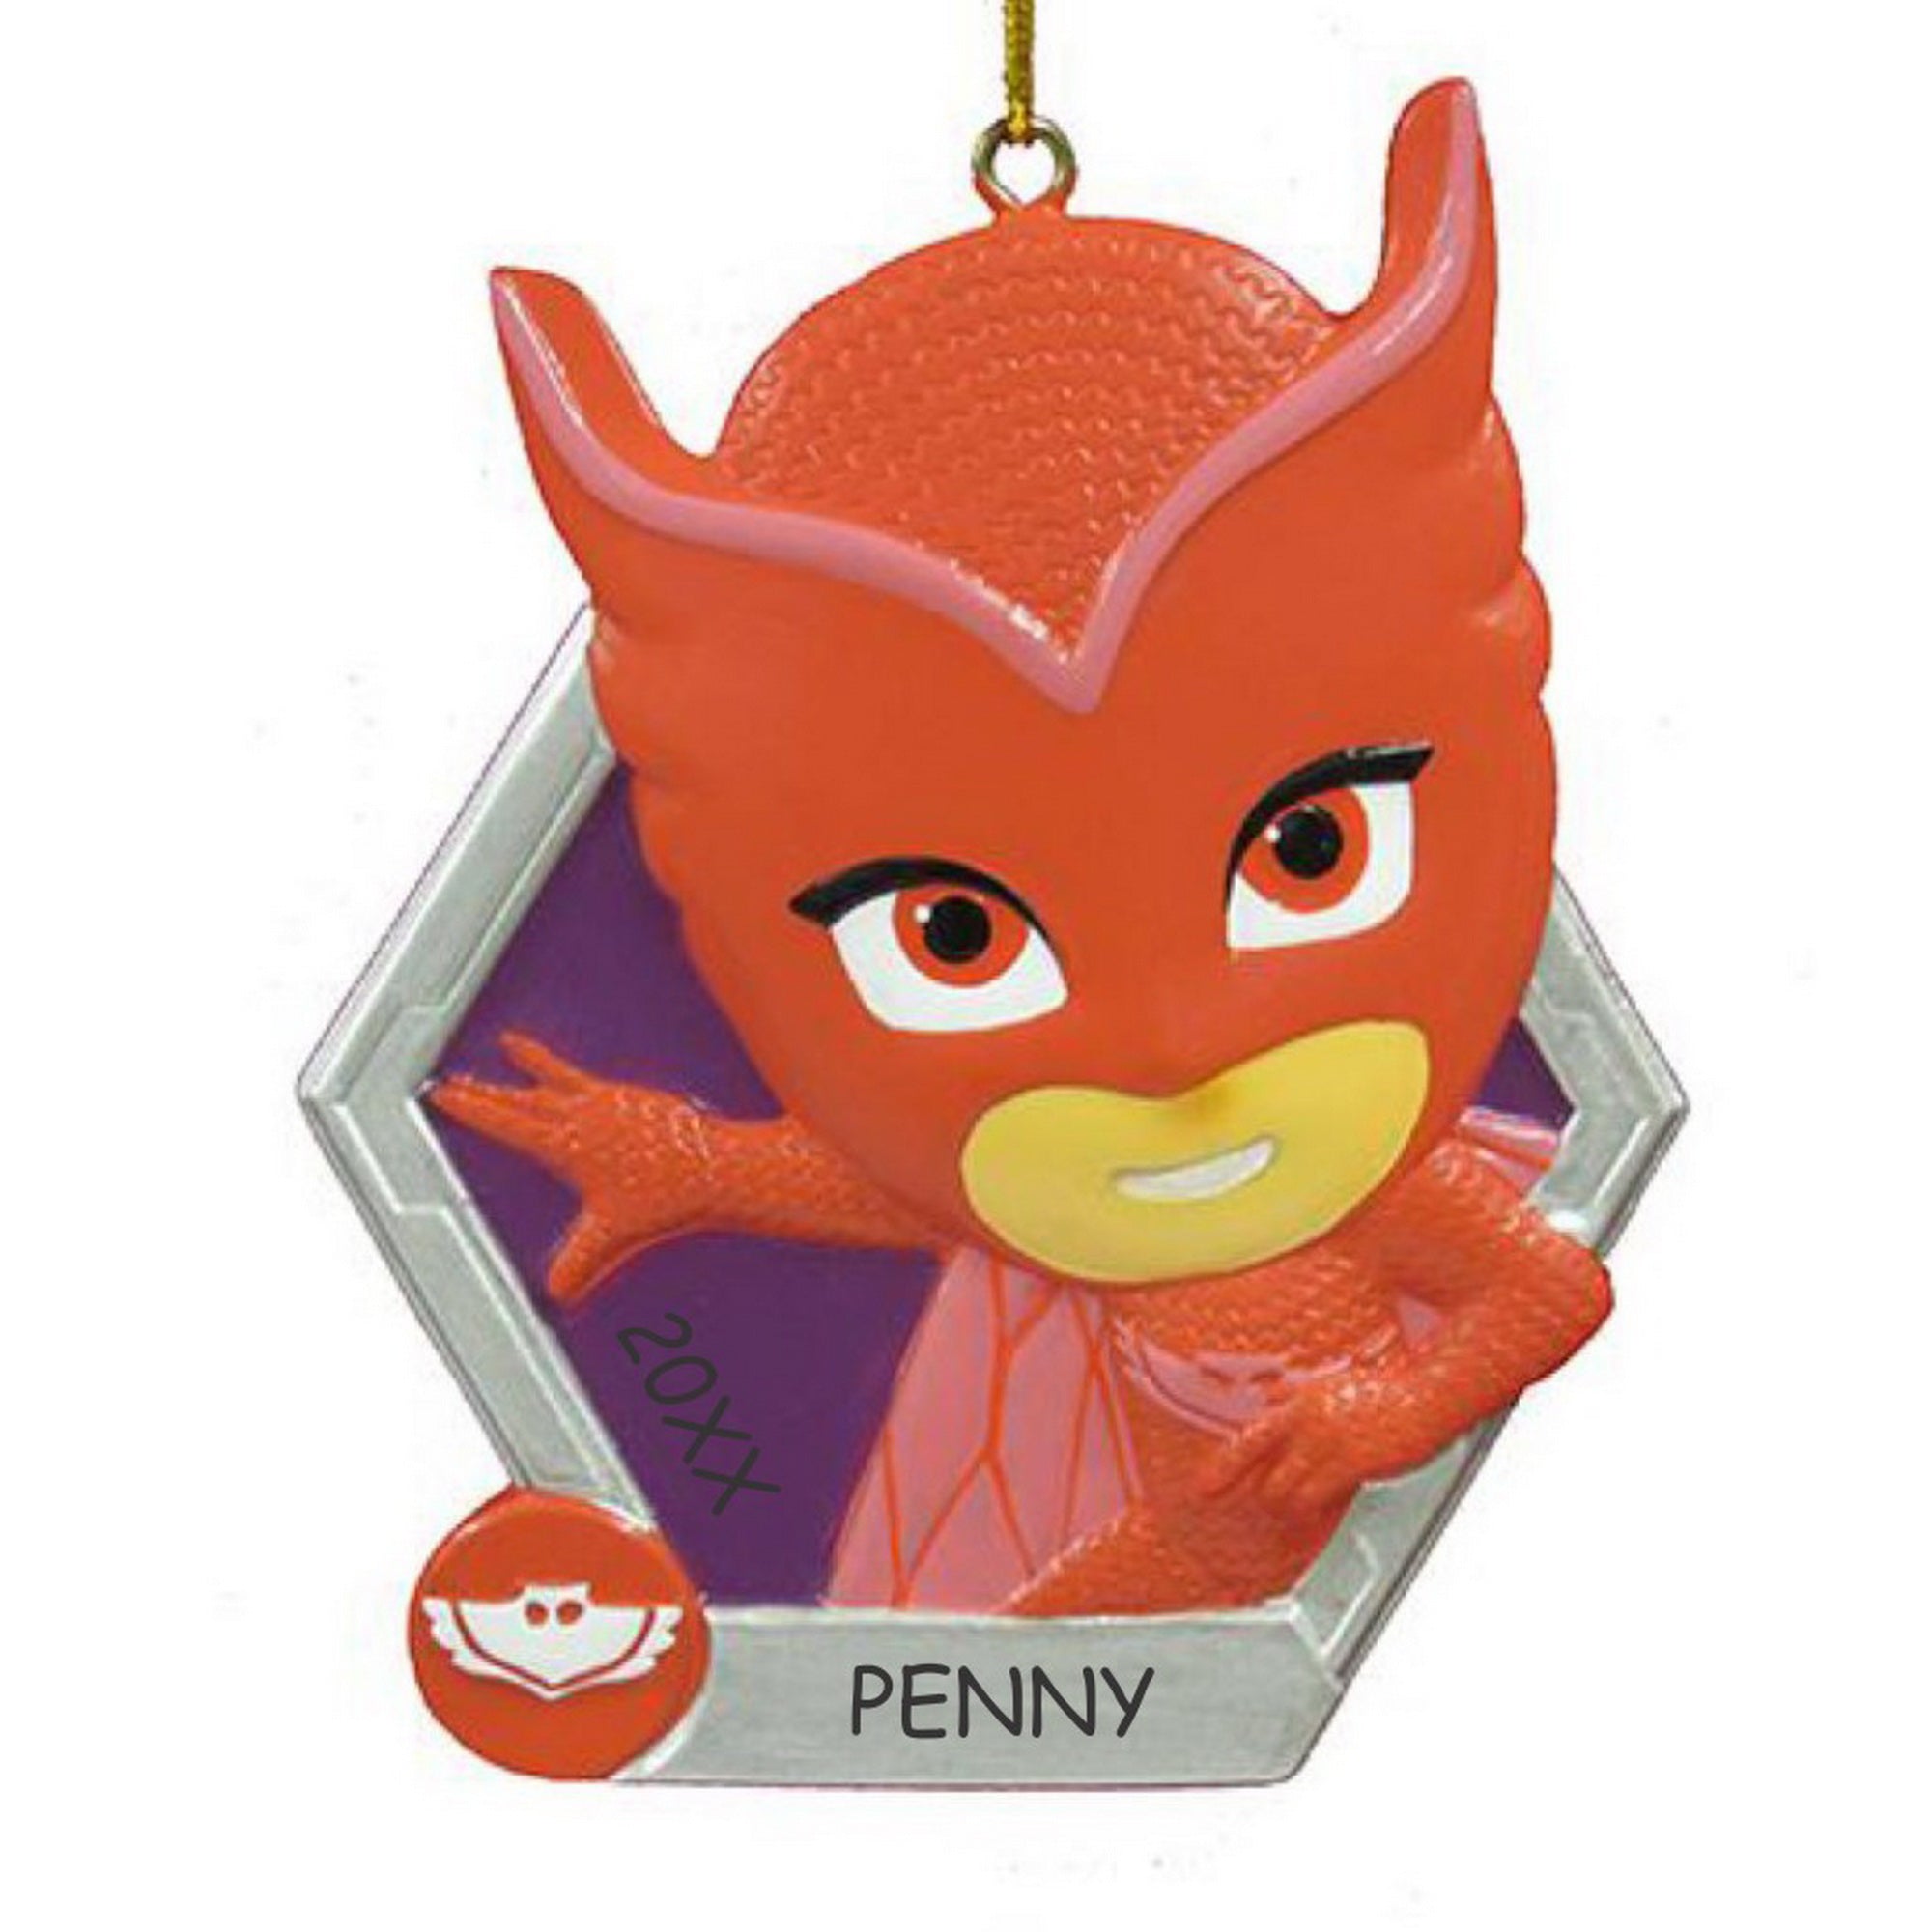 Personalized PJ Masks Ornament - Owlette